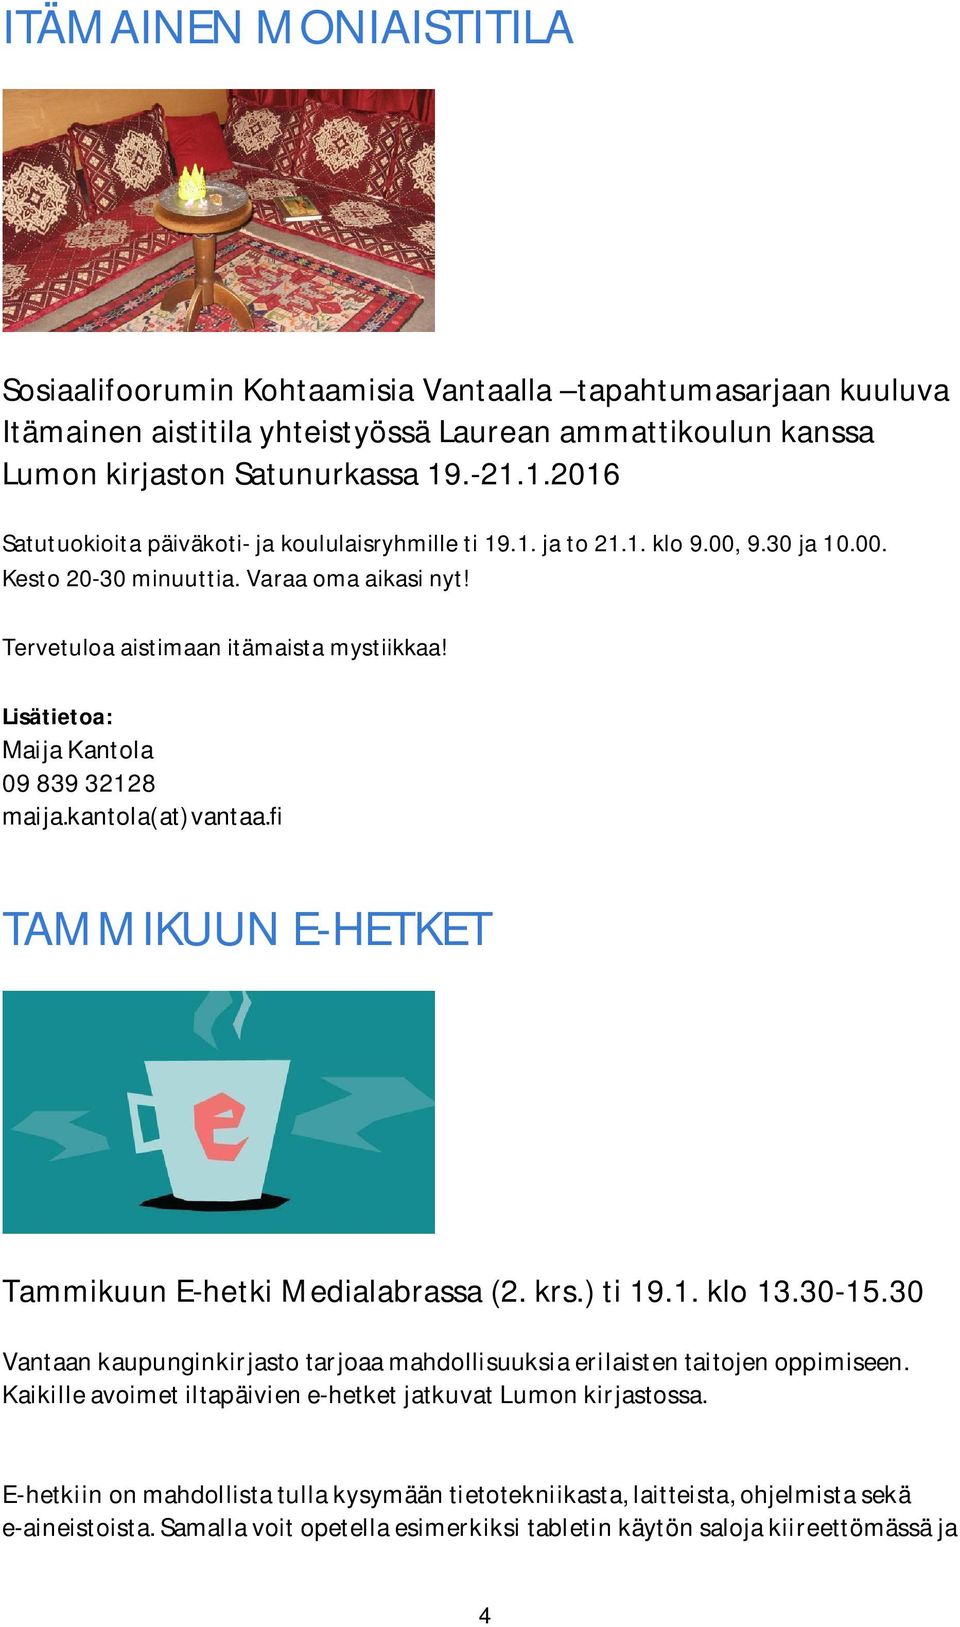 Lisätietoa: MaijaKantola 0983932128 maija.kantola(at)vantaa.fi TAMMIKUUN E-HETKET Tammikuun E-hetki Medialabrassa (2. krs.) ti 19.1. klo 13.30-15.